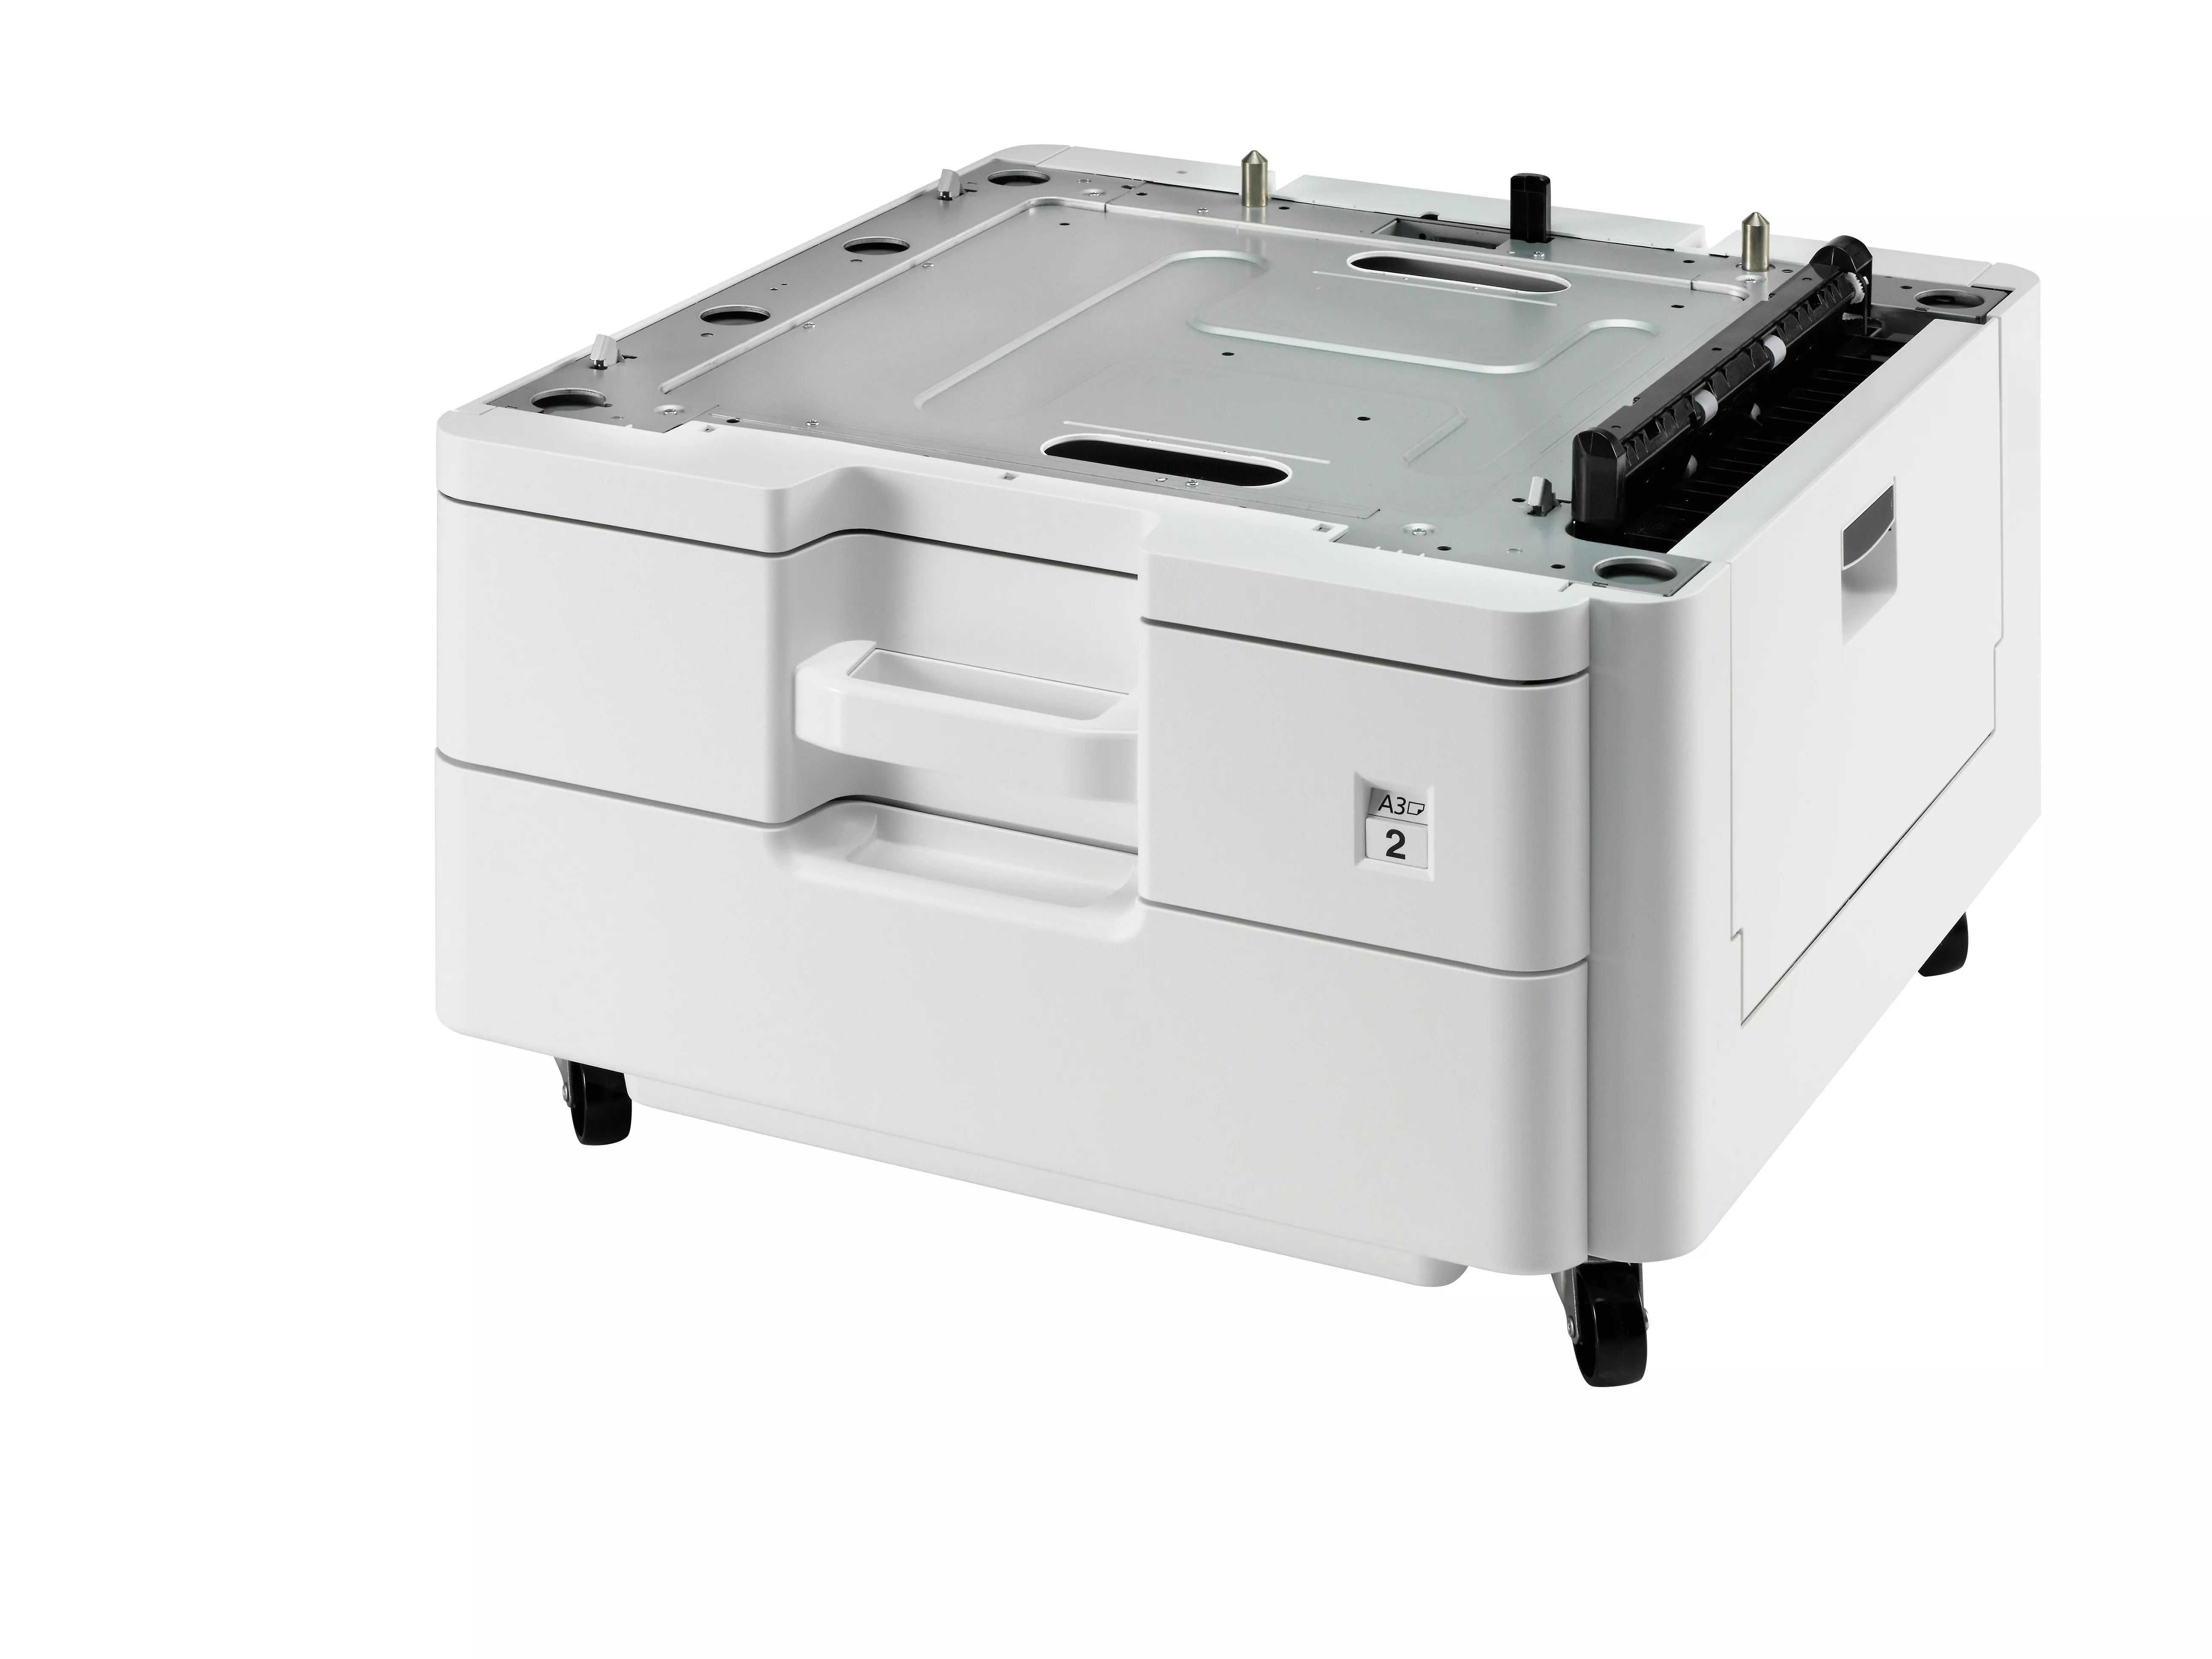 Vente Accessoires pour imprimante KYOCERA PF-470 sur hello RSE